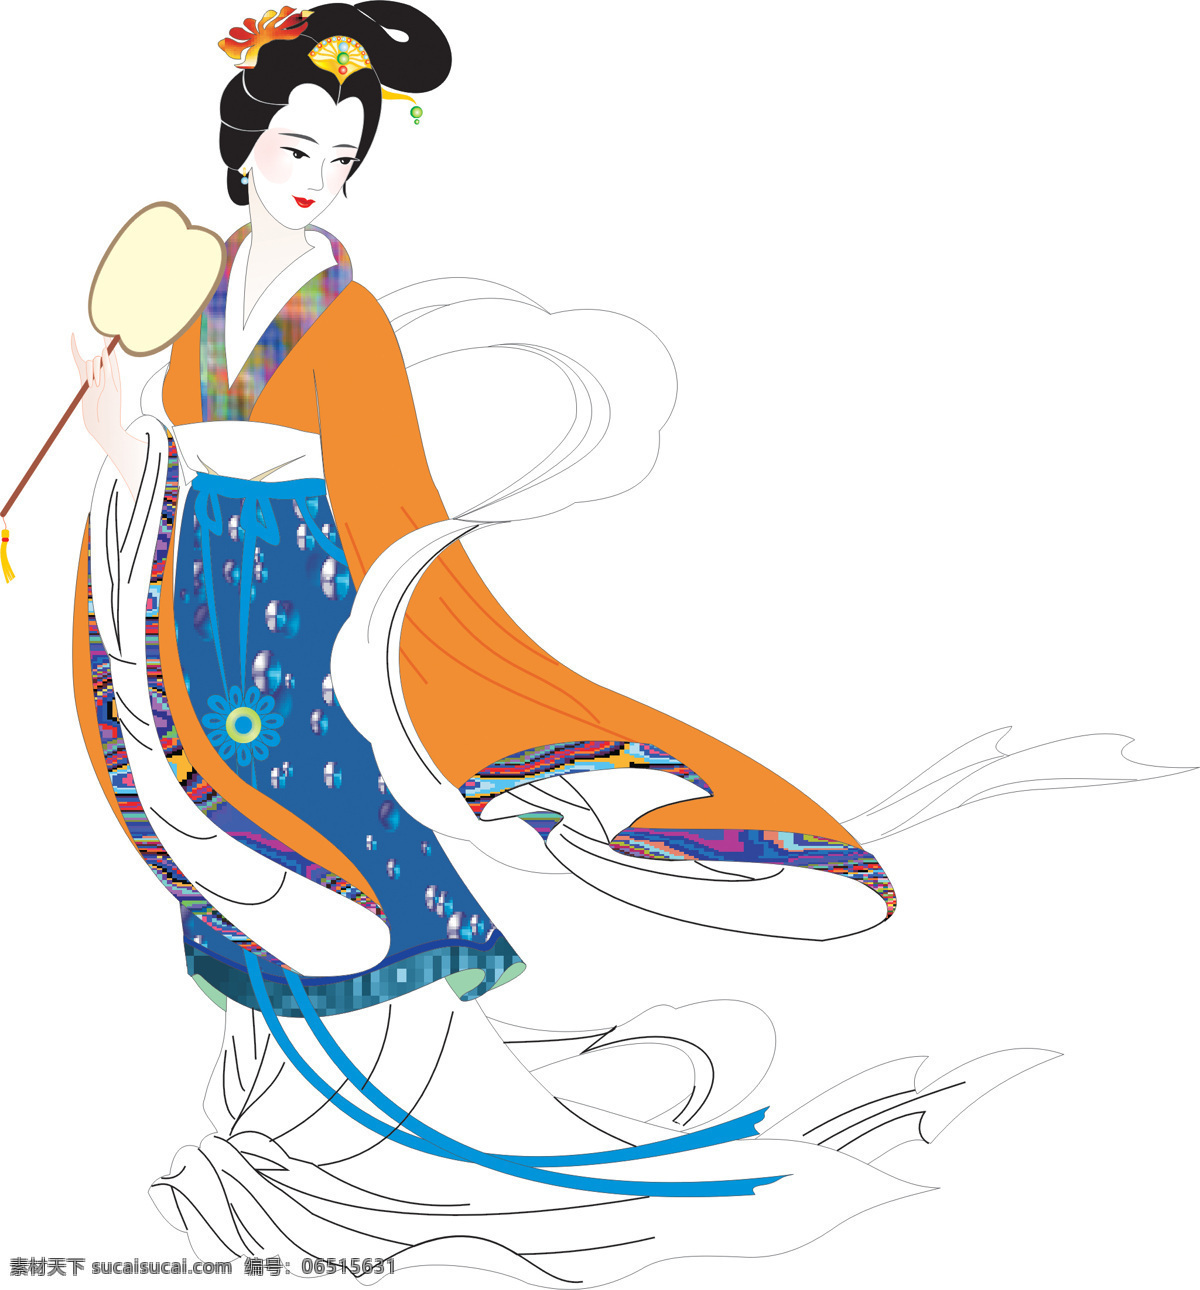 仕女图 中国 古典 美女 仕女 古装 传统 手绘 cg 绘画 人物 扇子 绘画书法 文化艺术